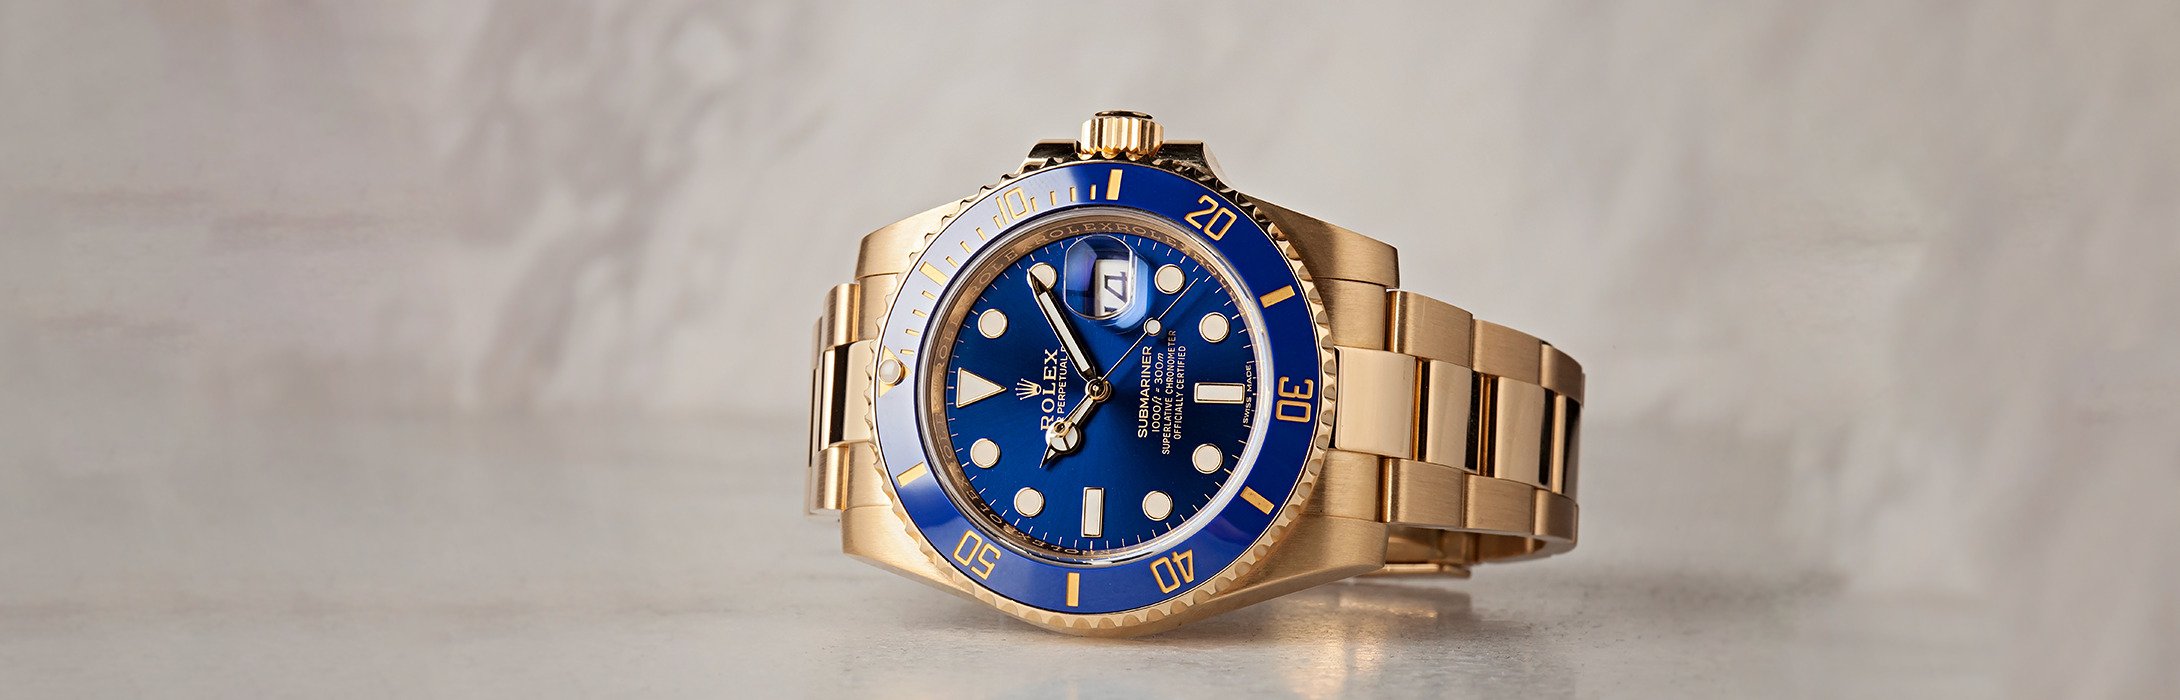 Blue Luxury Watch Rolex Submariner